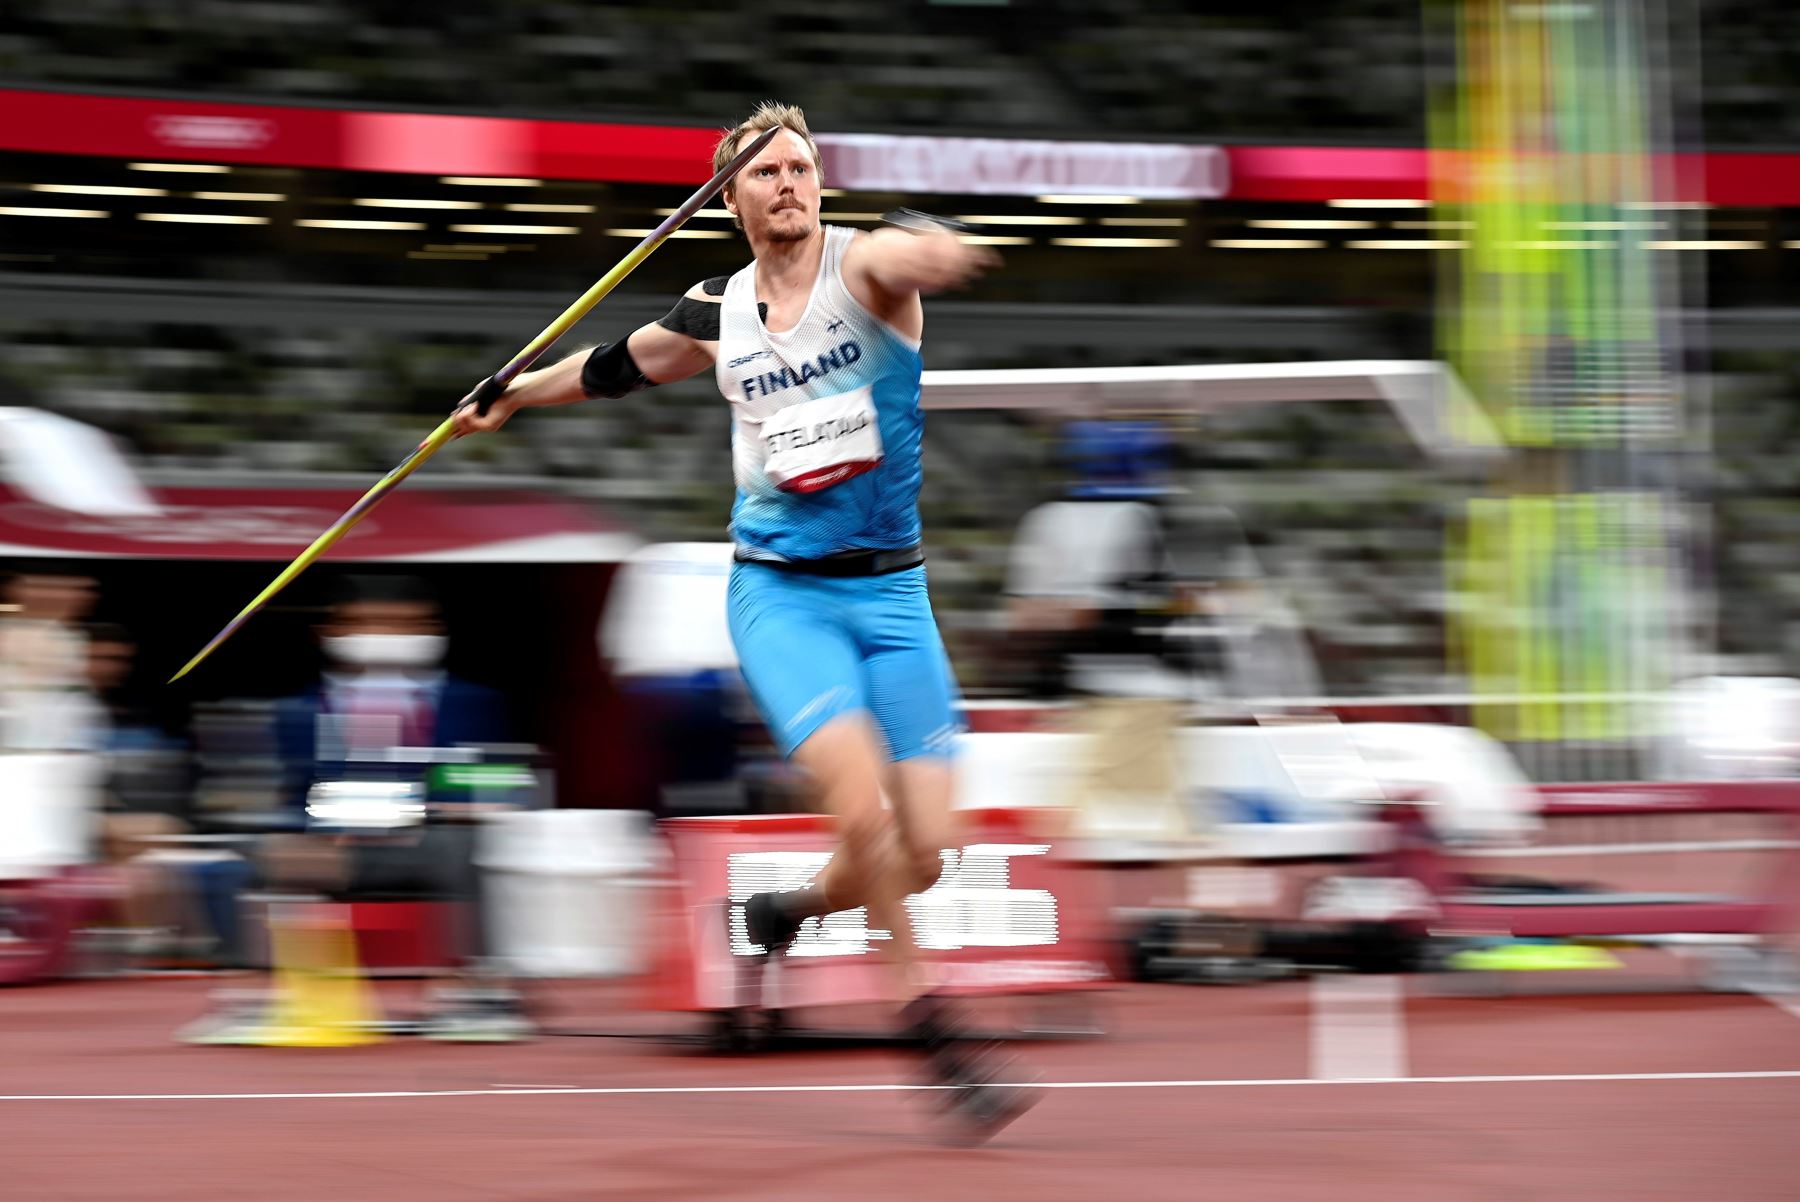 Lassi Etelatalo de Finlandia compite en la final de lanzamiento de jabalina masculina durante los eventos de Atletismo de los Juegos Olímpicos de Tokio 2020, en el Estadio Olímpico de Tokio, Japón. Foto: EFE